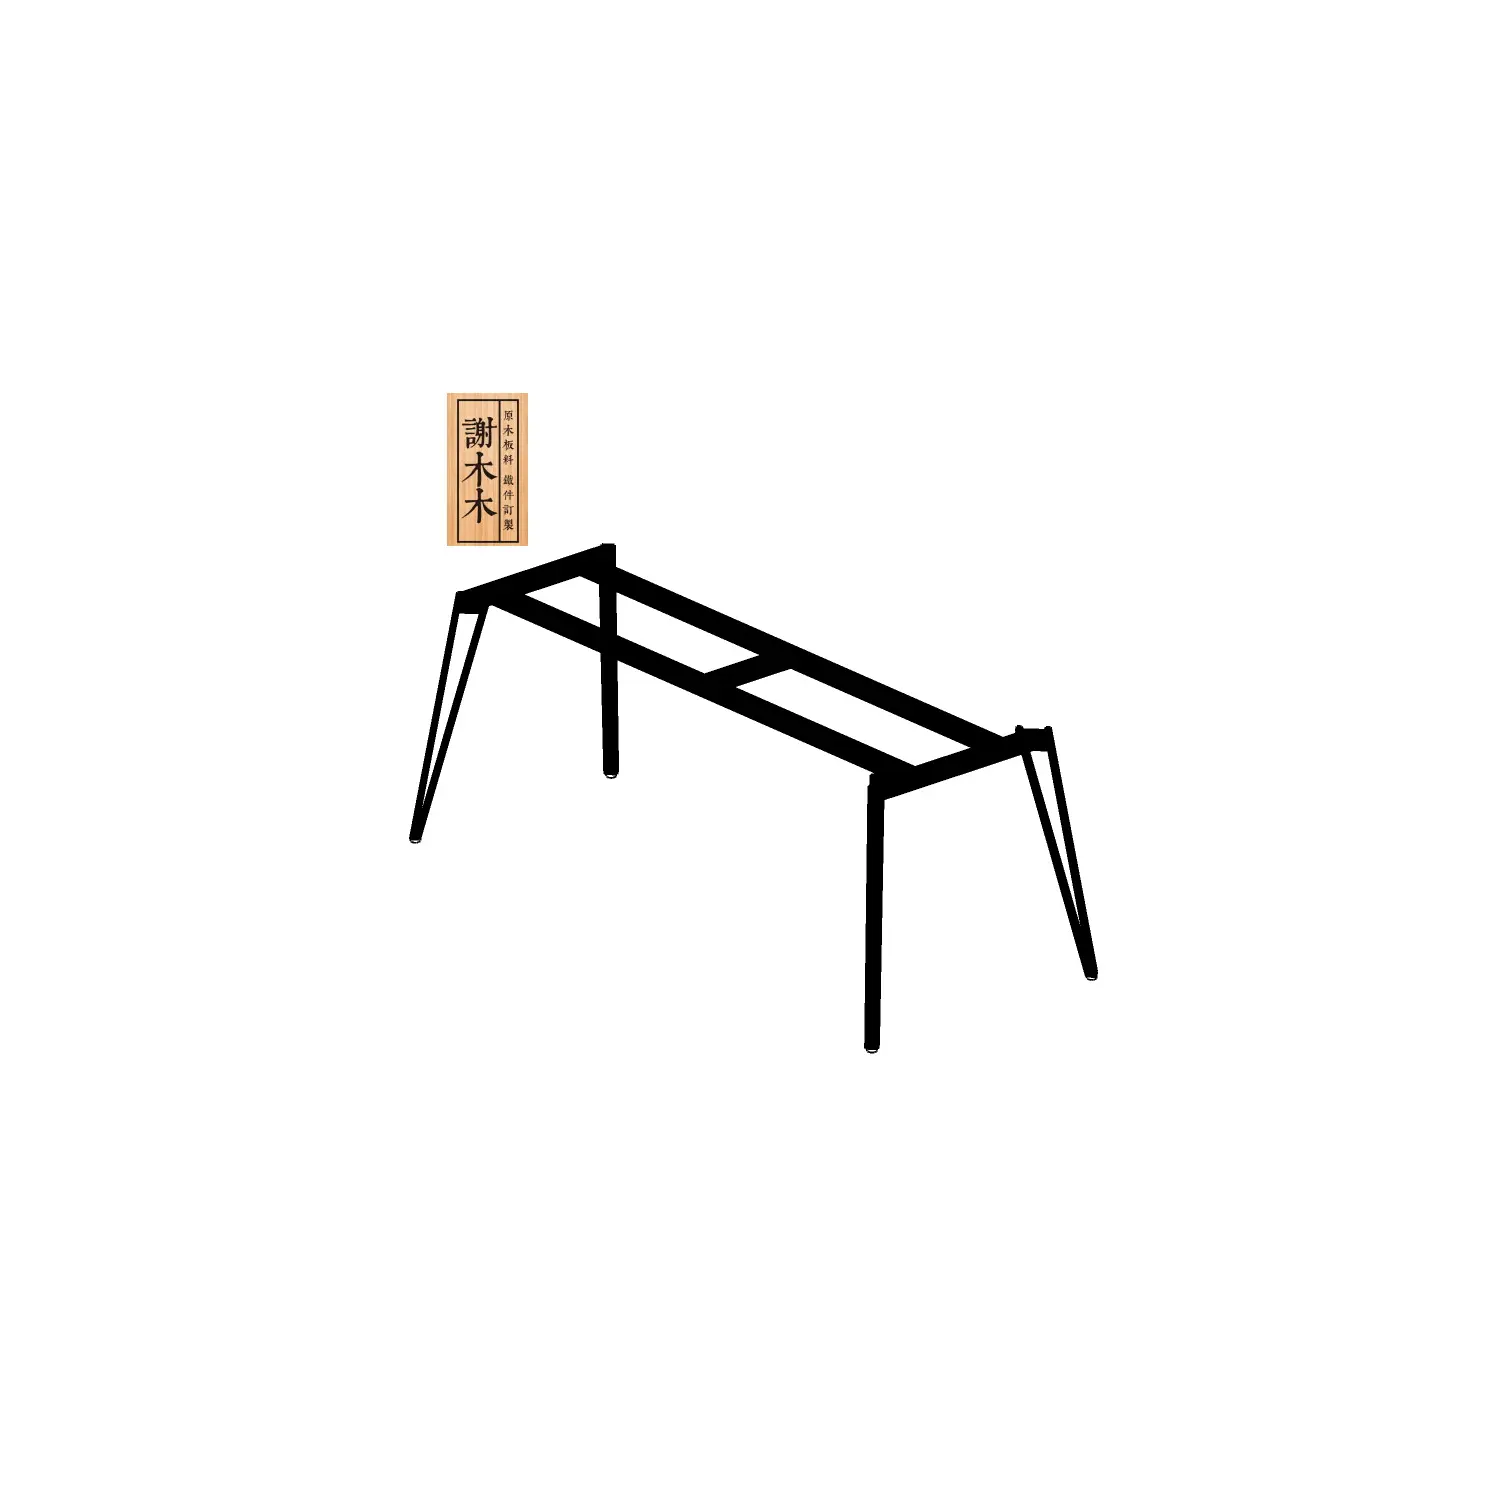 工場供給耐久性のある異なるサイズの組み立て金属テーブル脚ビジネスオフィステーブル用